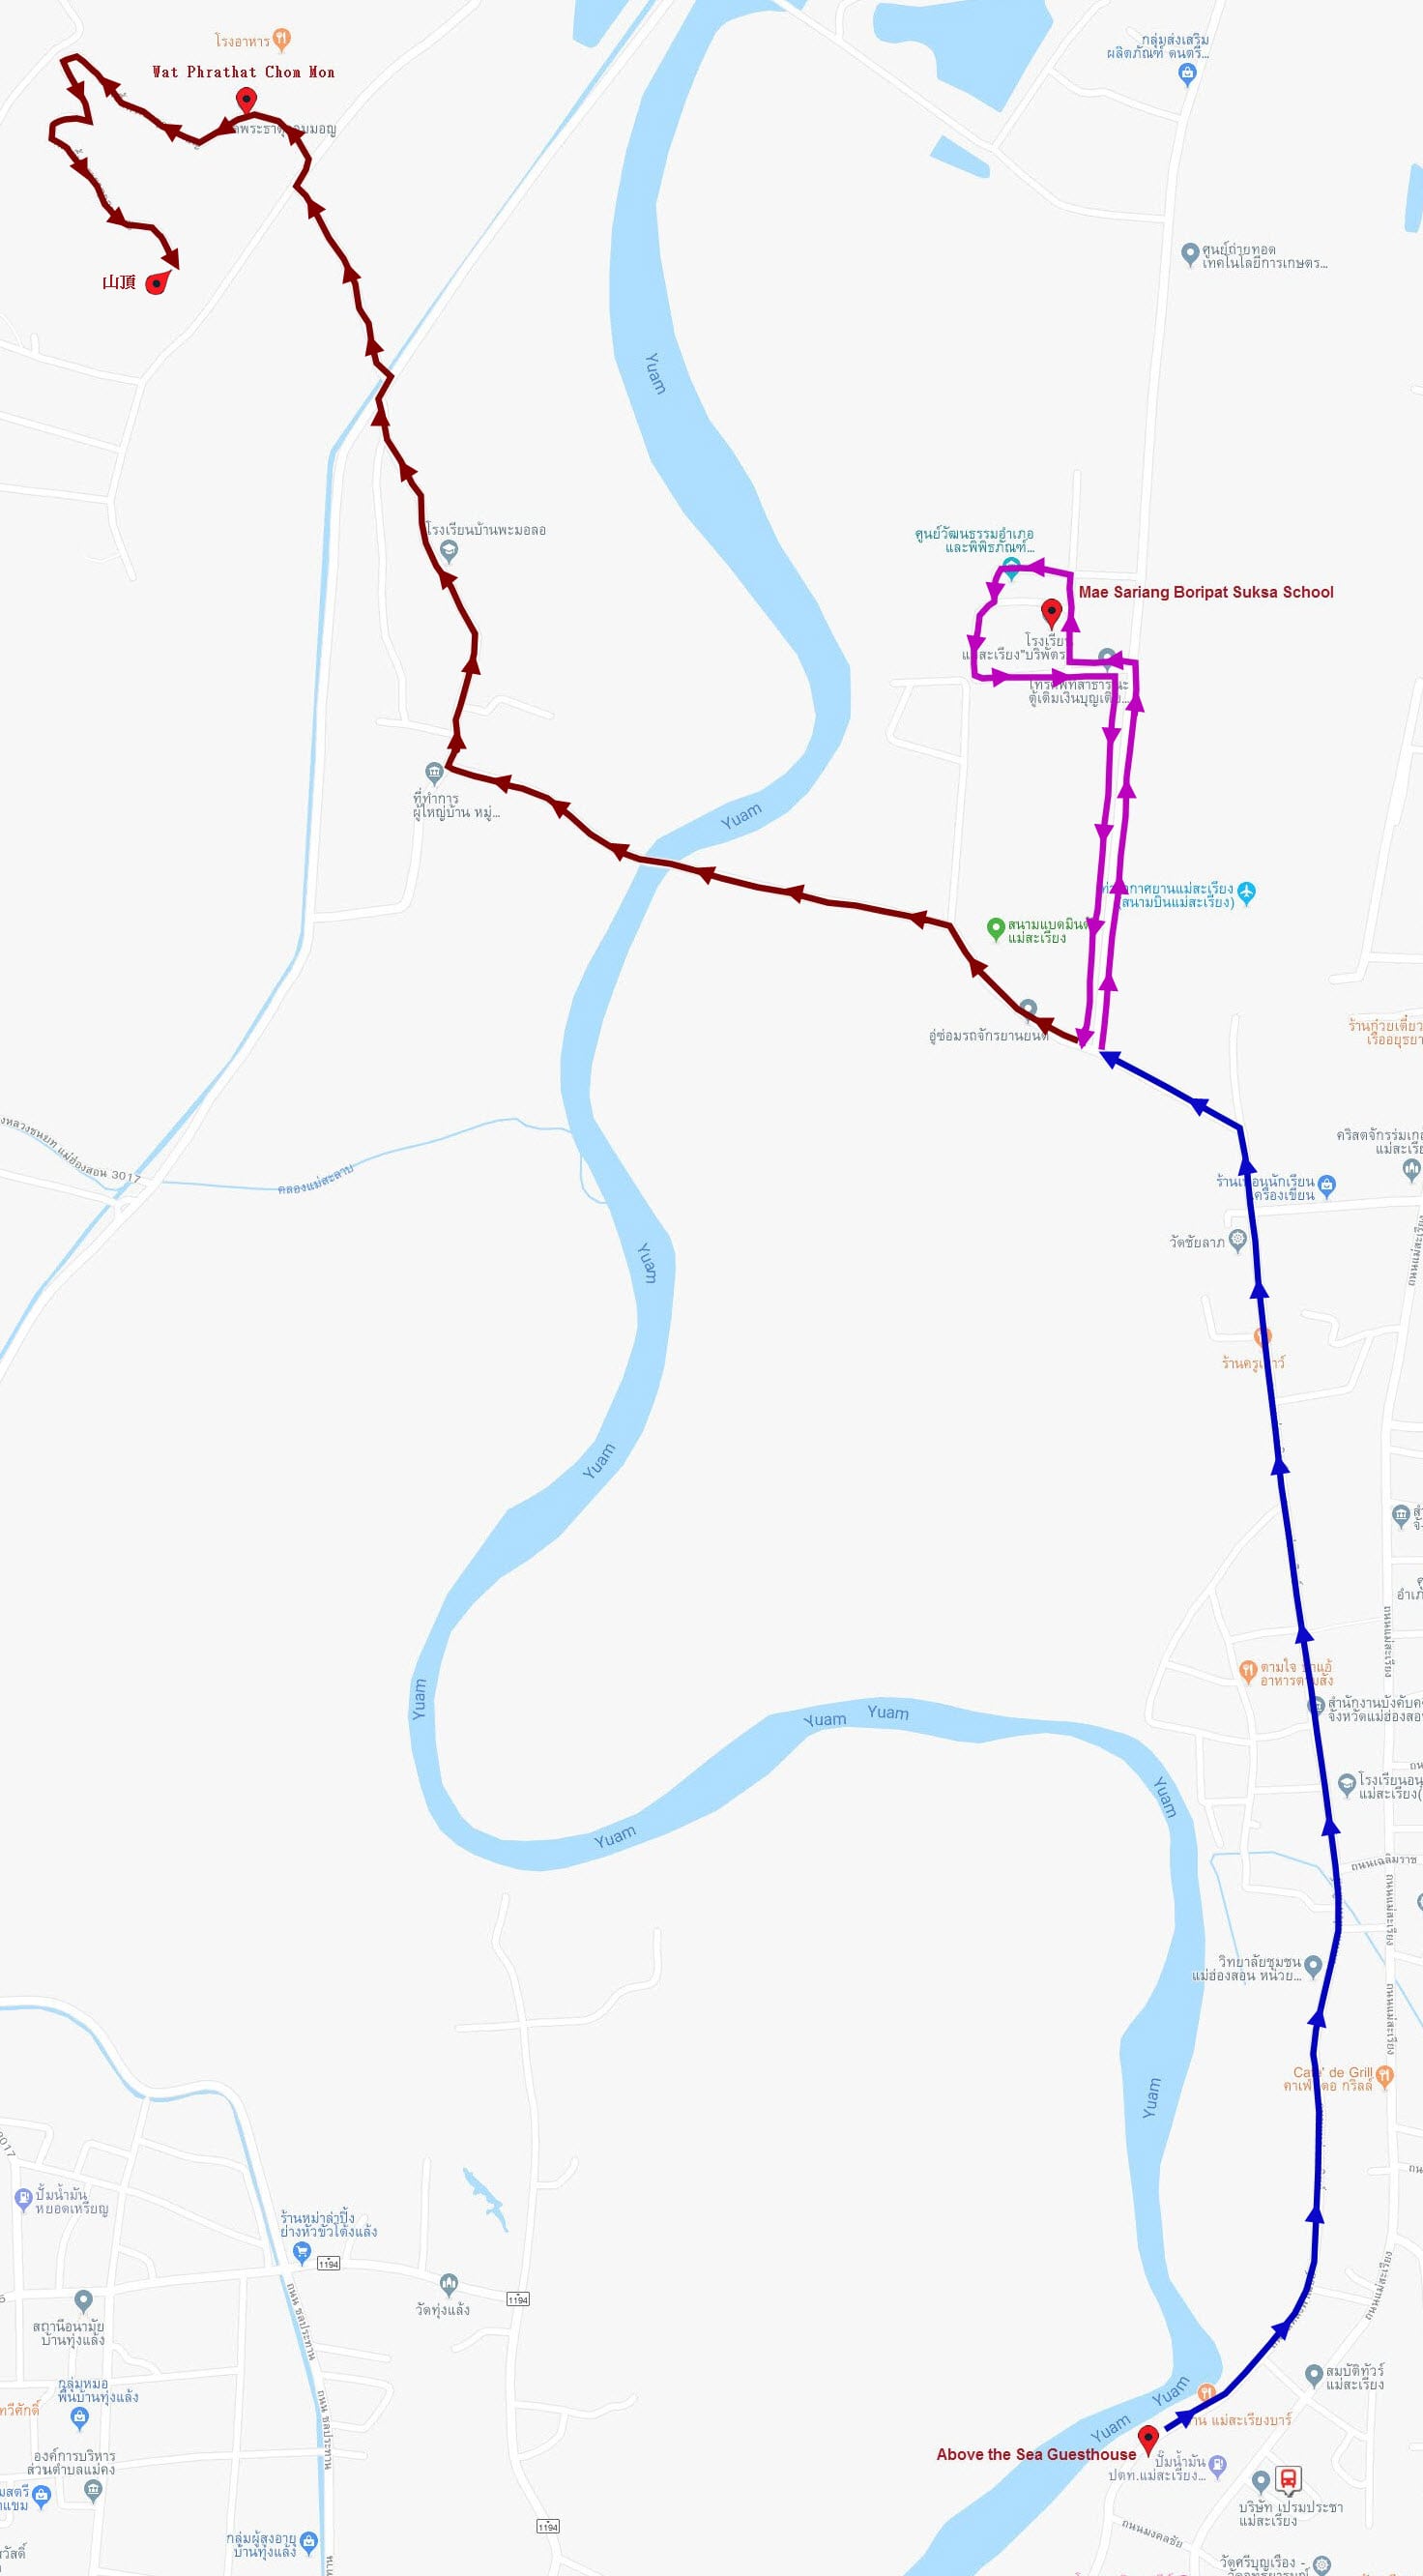 泰國夜沙良 (Mae Sariang / อำเภอแม่สะเรียง) 鄉鎮中心步行到 Wat Phrathat Chom Mon 山頂路線地圖